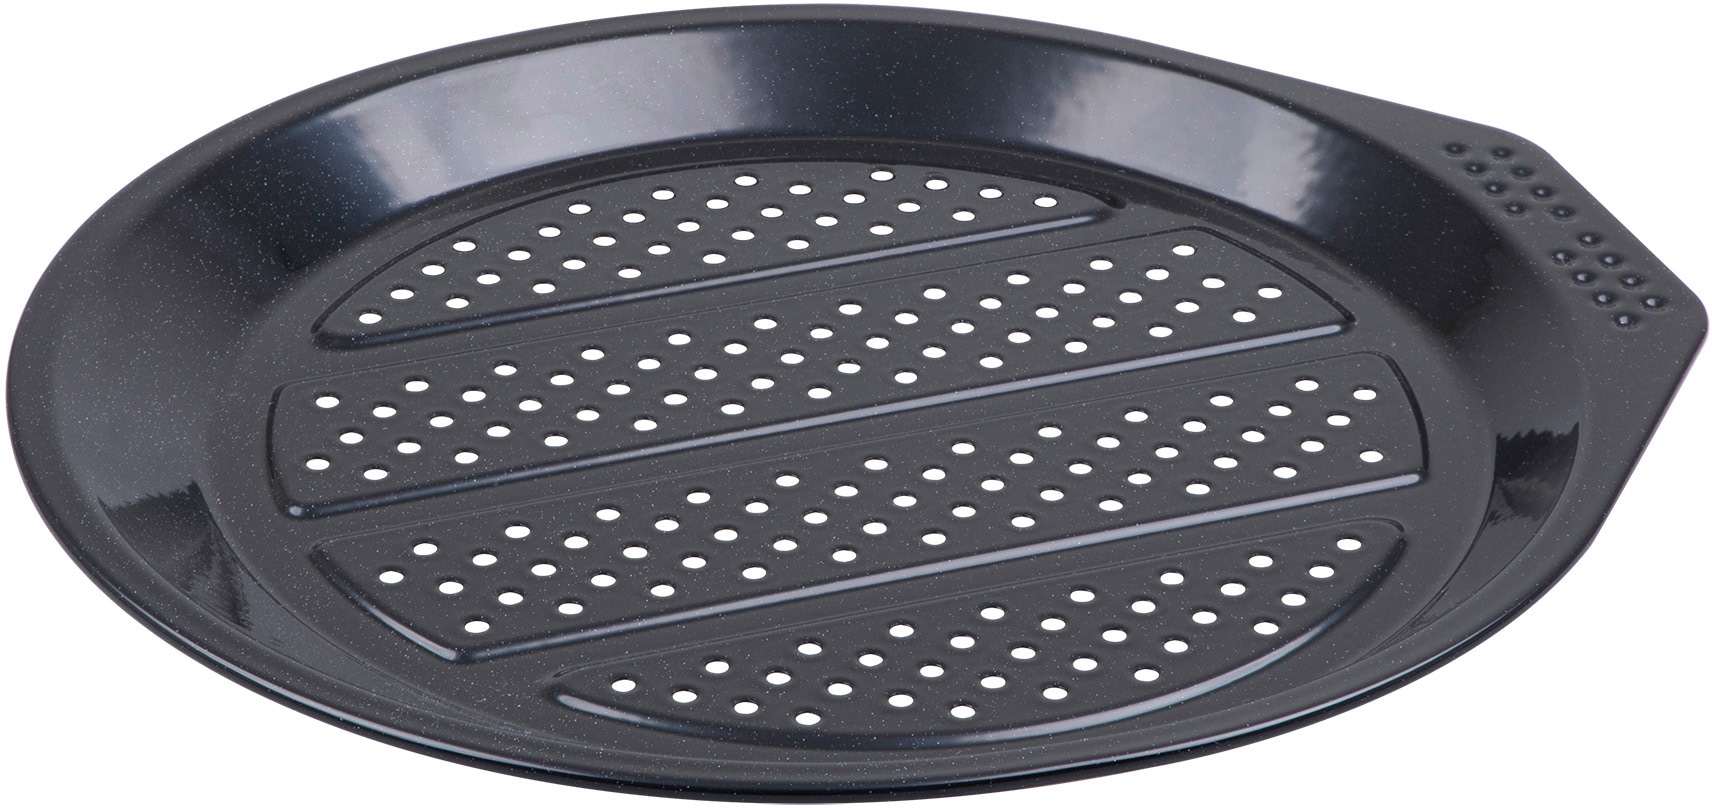 CHG Pizzablech »PRIMA "Emaille"«, Emaille, (1 St.), mit Lochung, Materialstärke 0,5 mm, schwarz gesprenkelt